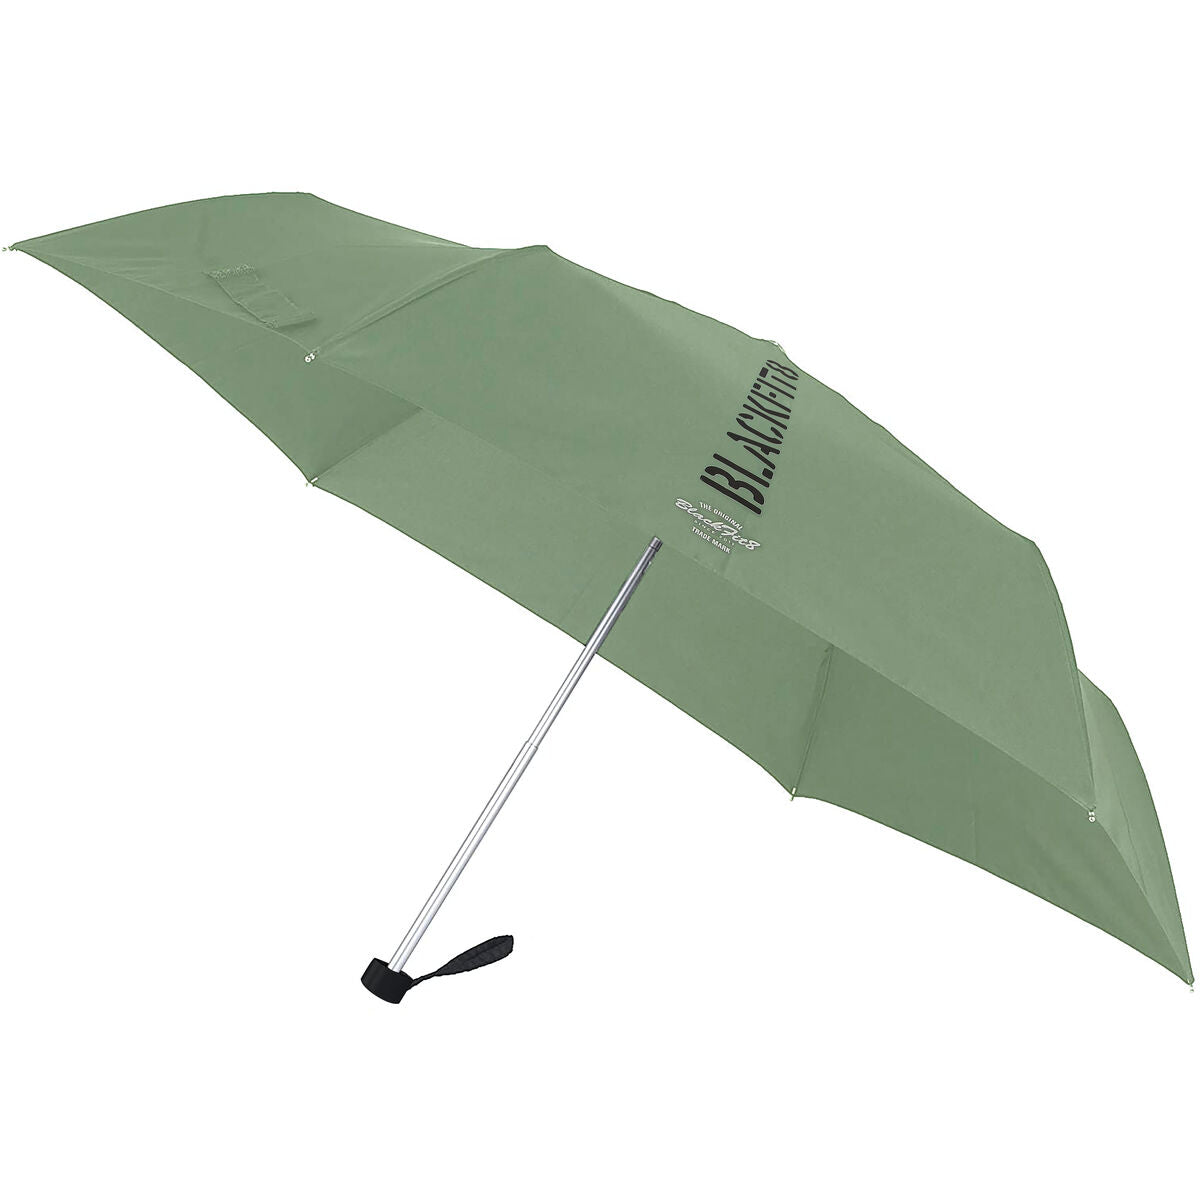 Paraplu militair groen (Ø 98 cm)